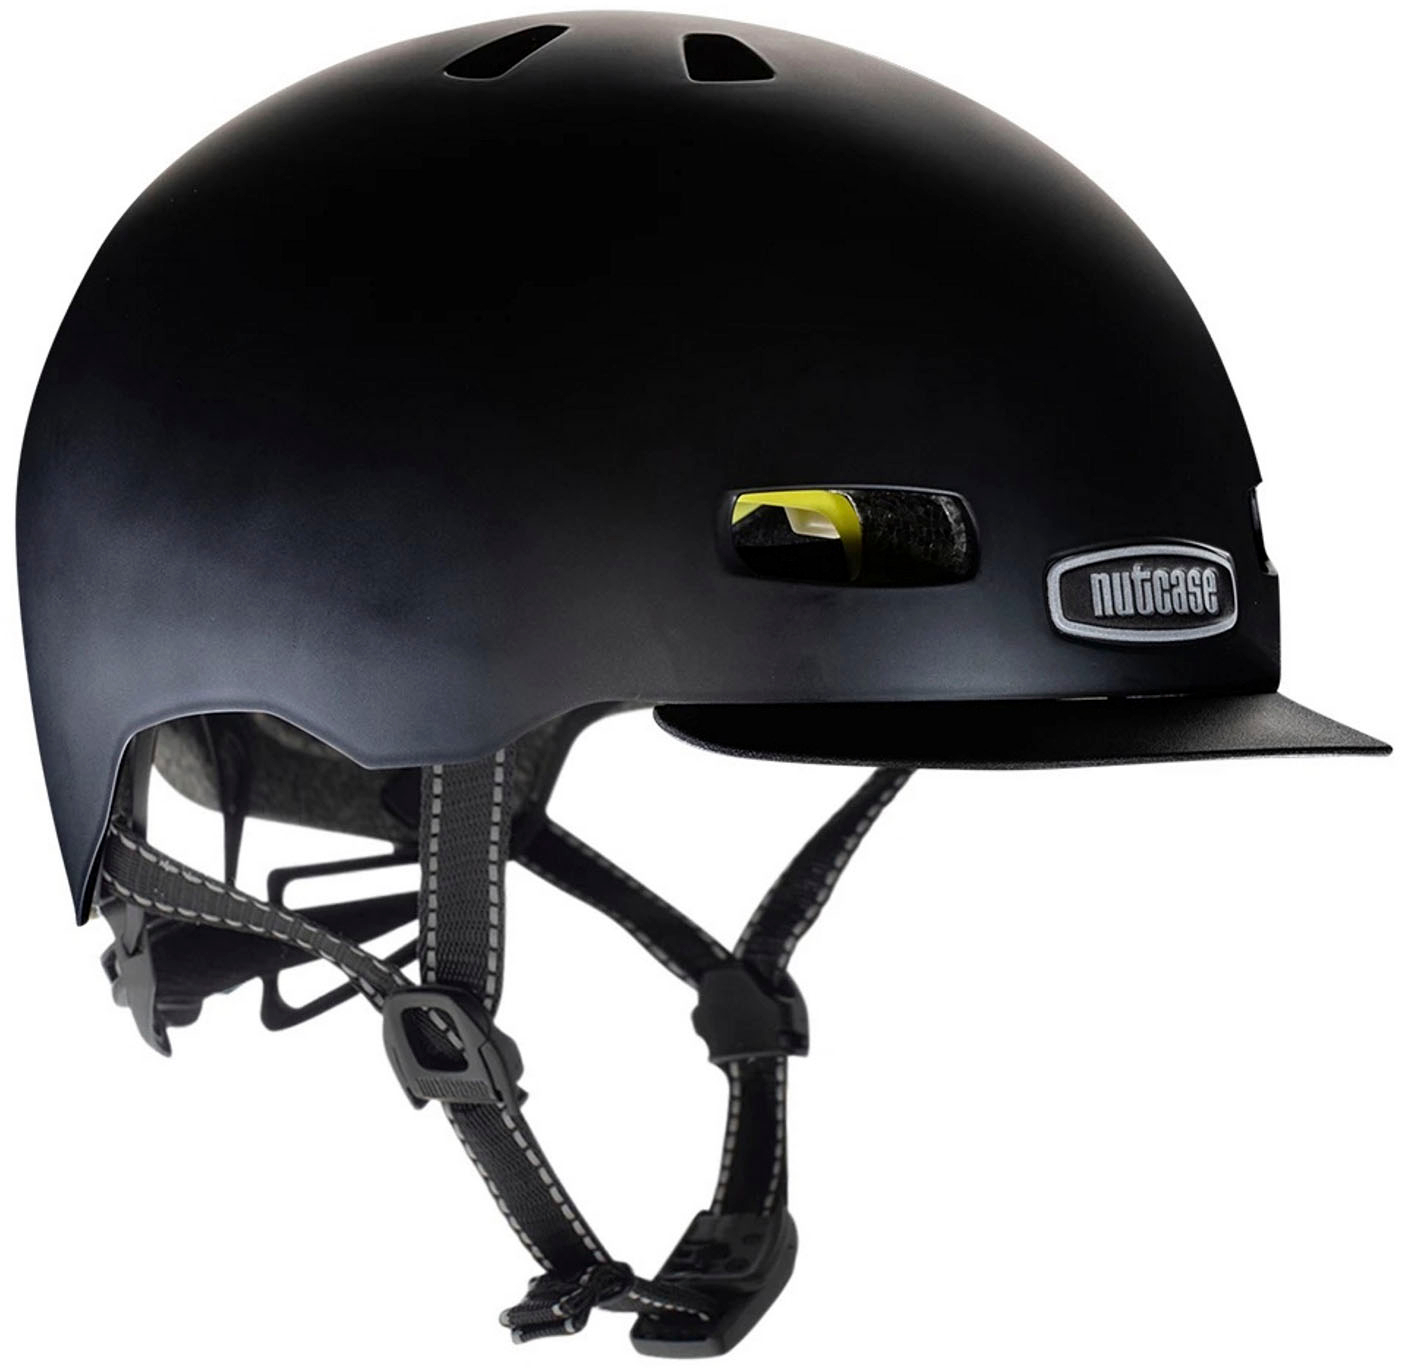 Nutcase - Street Bike Helmet with MIPS - Medium - Onyx Solid Satin